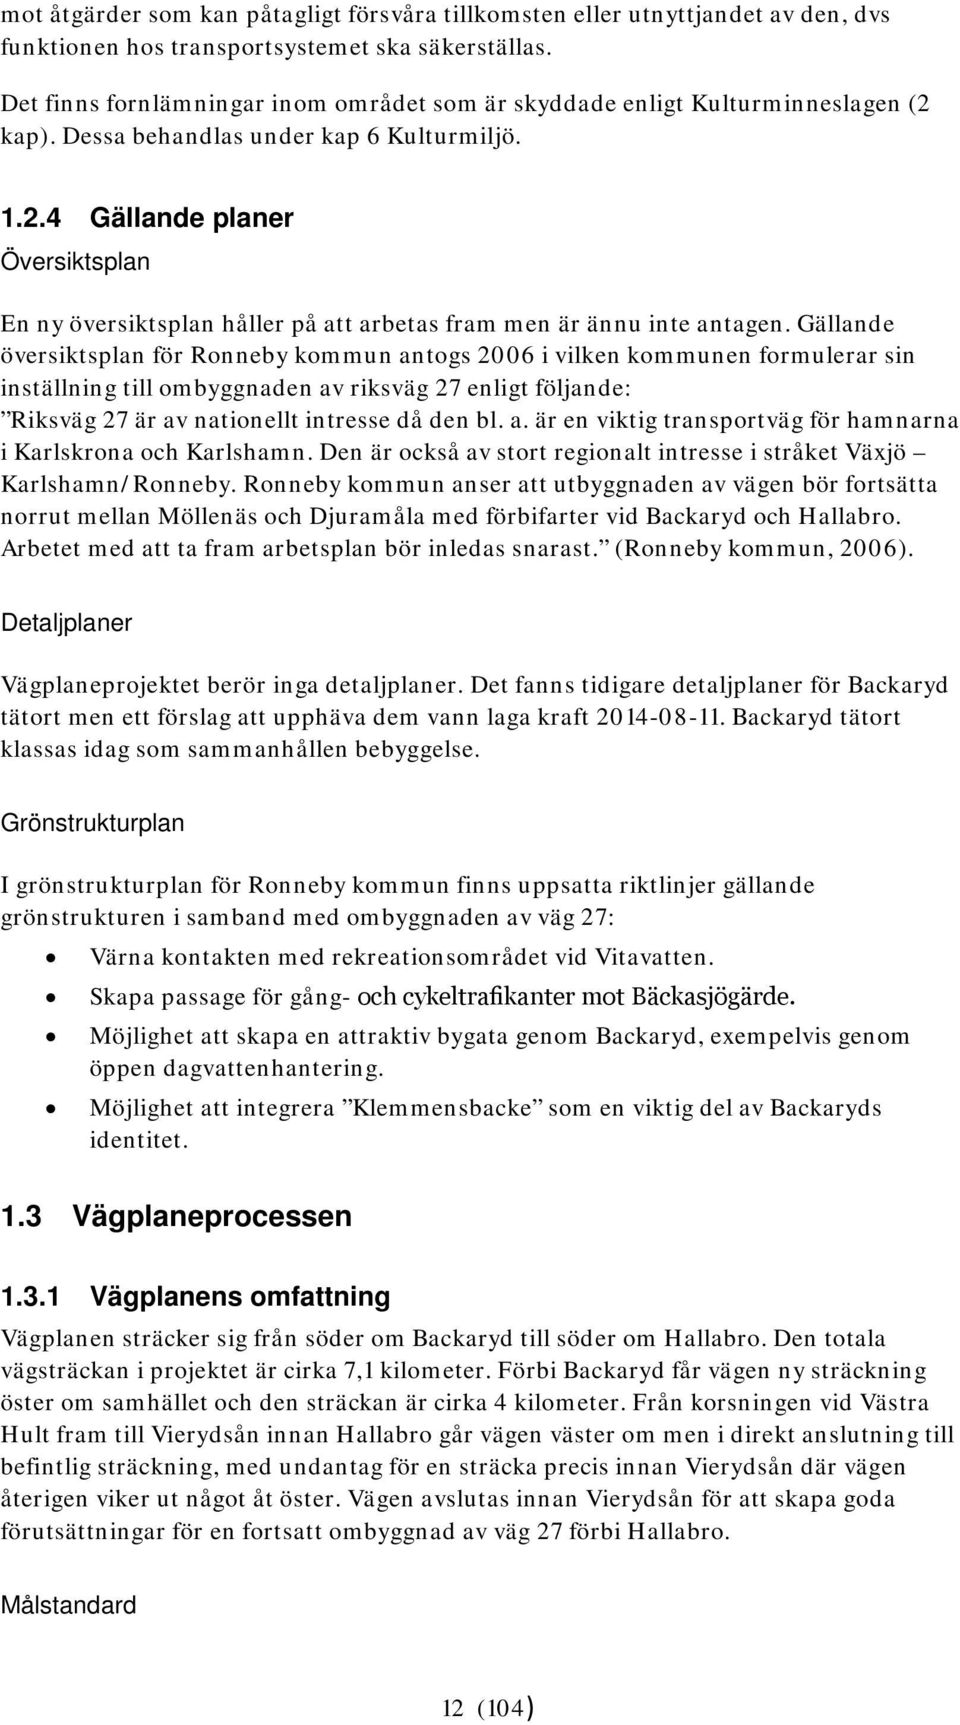 Gällande översiktsplan för Ronneby kommun antogs 2006 i vilken kommunen formulerar sin inställning till ombyggnaden av riksväg 27 enligt följande: Riksväg 27 är av nationellt intresse då den bl. a. är en viktig transportväg för hamnarna i Karlskrona och Karlshamn.